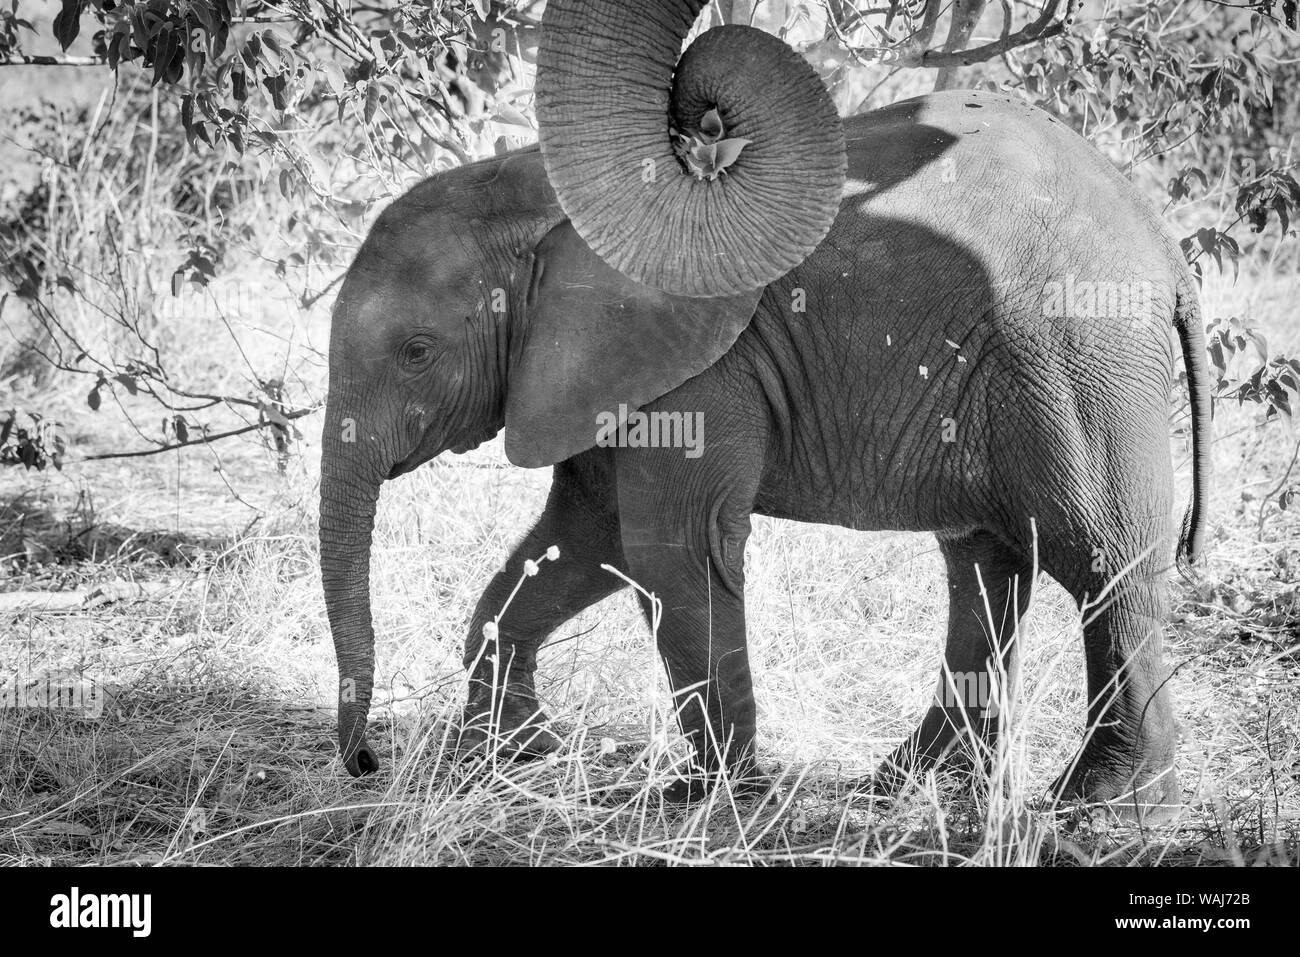 L'Afrique, Botswana, Chobe National Park. Noir et blanc de veau éléphant close-up. En tant que crédit : Wendy Kaveney Jaynes / Galerie / DanitaDelimont.com Banque D'Images